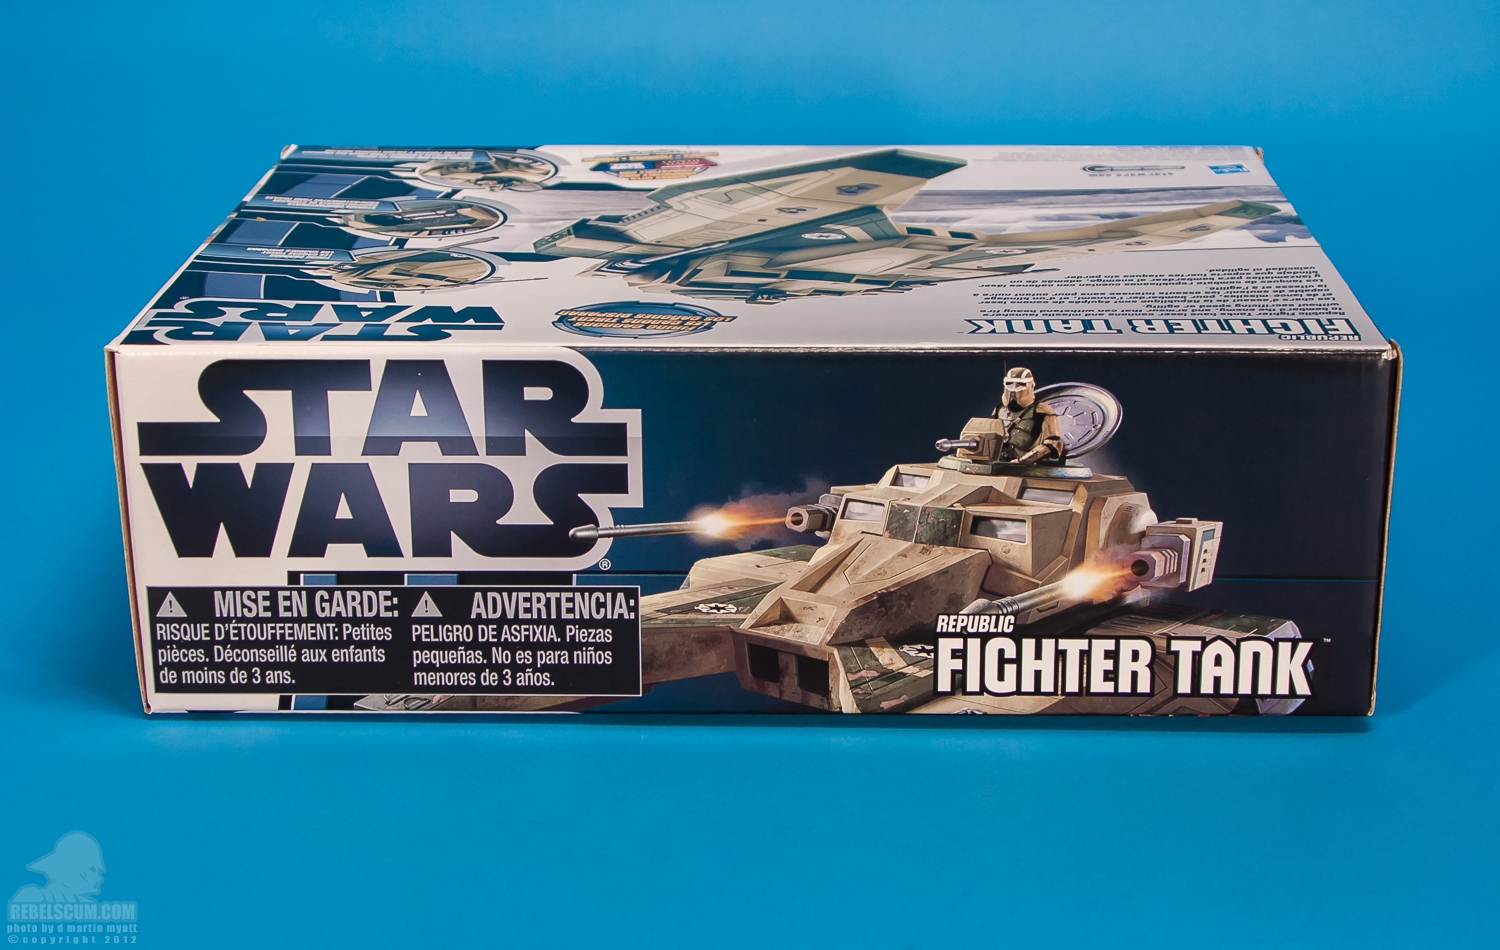 Republic_Fighter_Tank_Movie_Heroes_Star_Wars_Vehicle_Hasbro-26.jpg